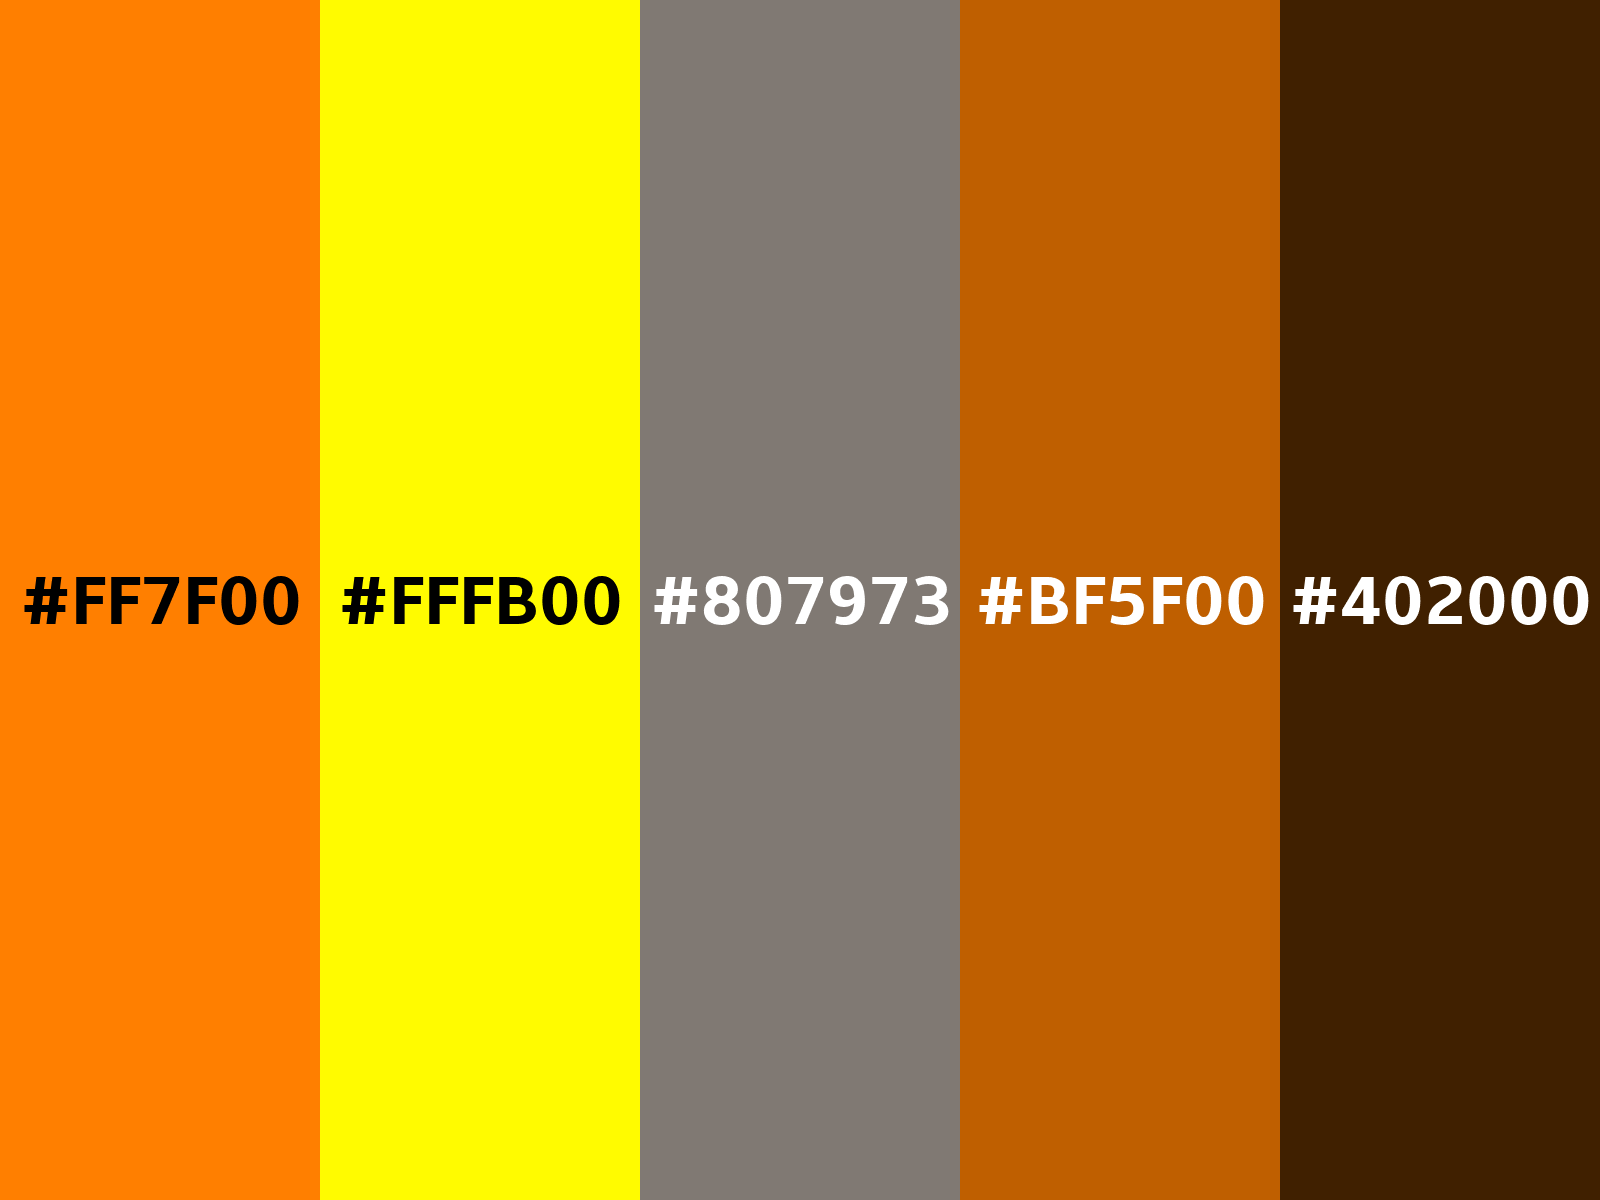 Orange (color wheel) color (RGB 255, 127, 0)